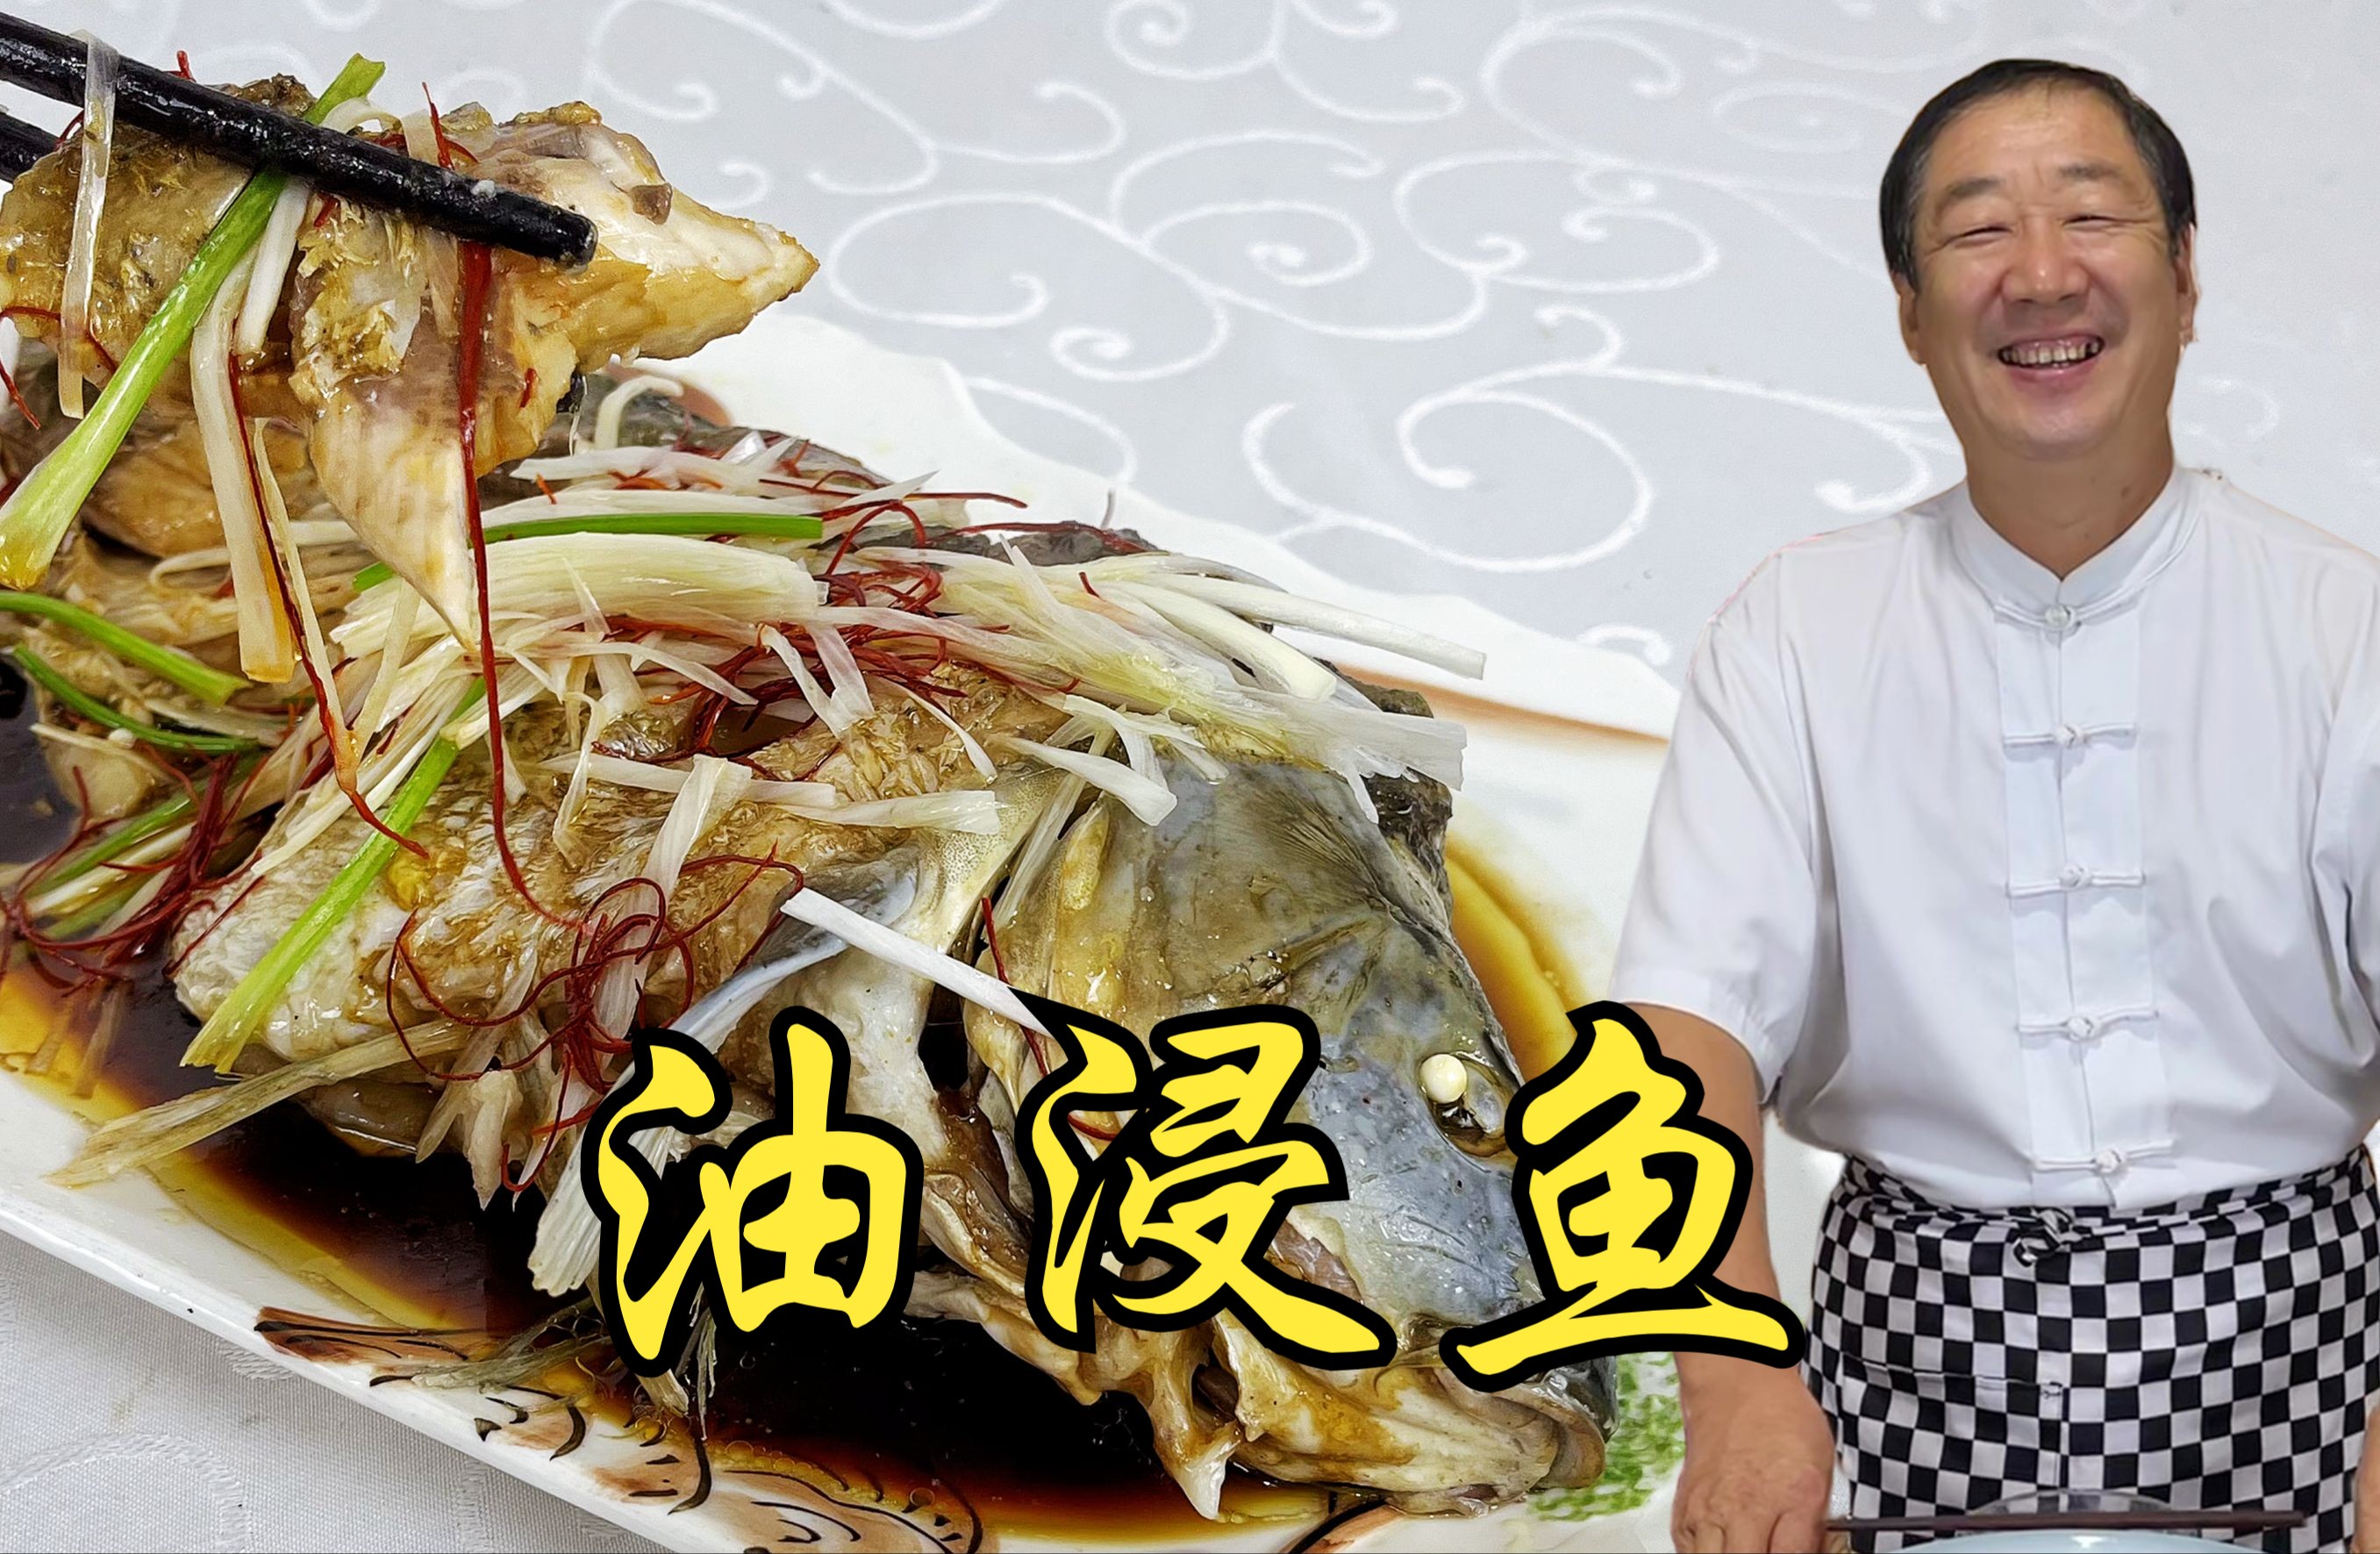 美味情缘: 油浸马友鱼 Deep-fried Crispy Fish with Soy Sauce